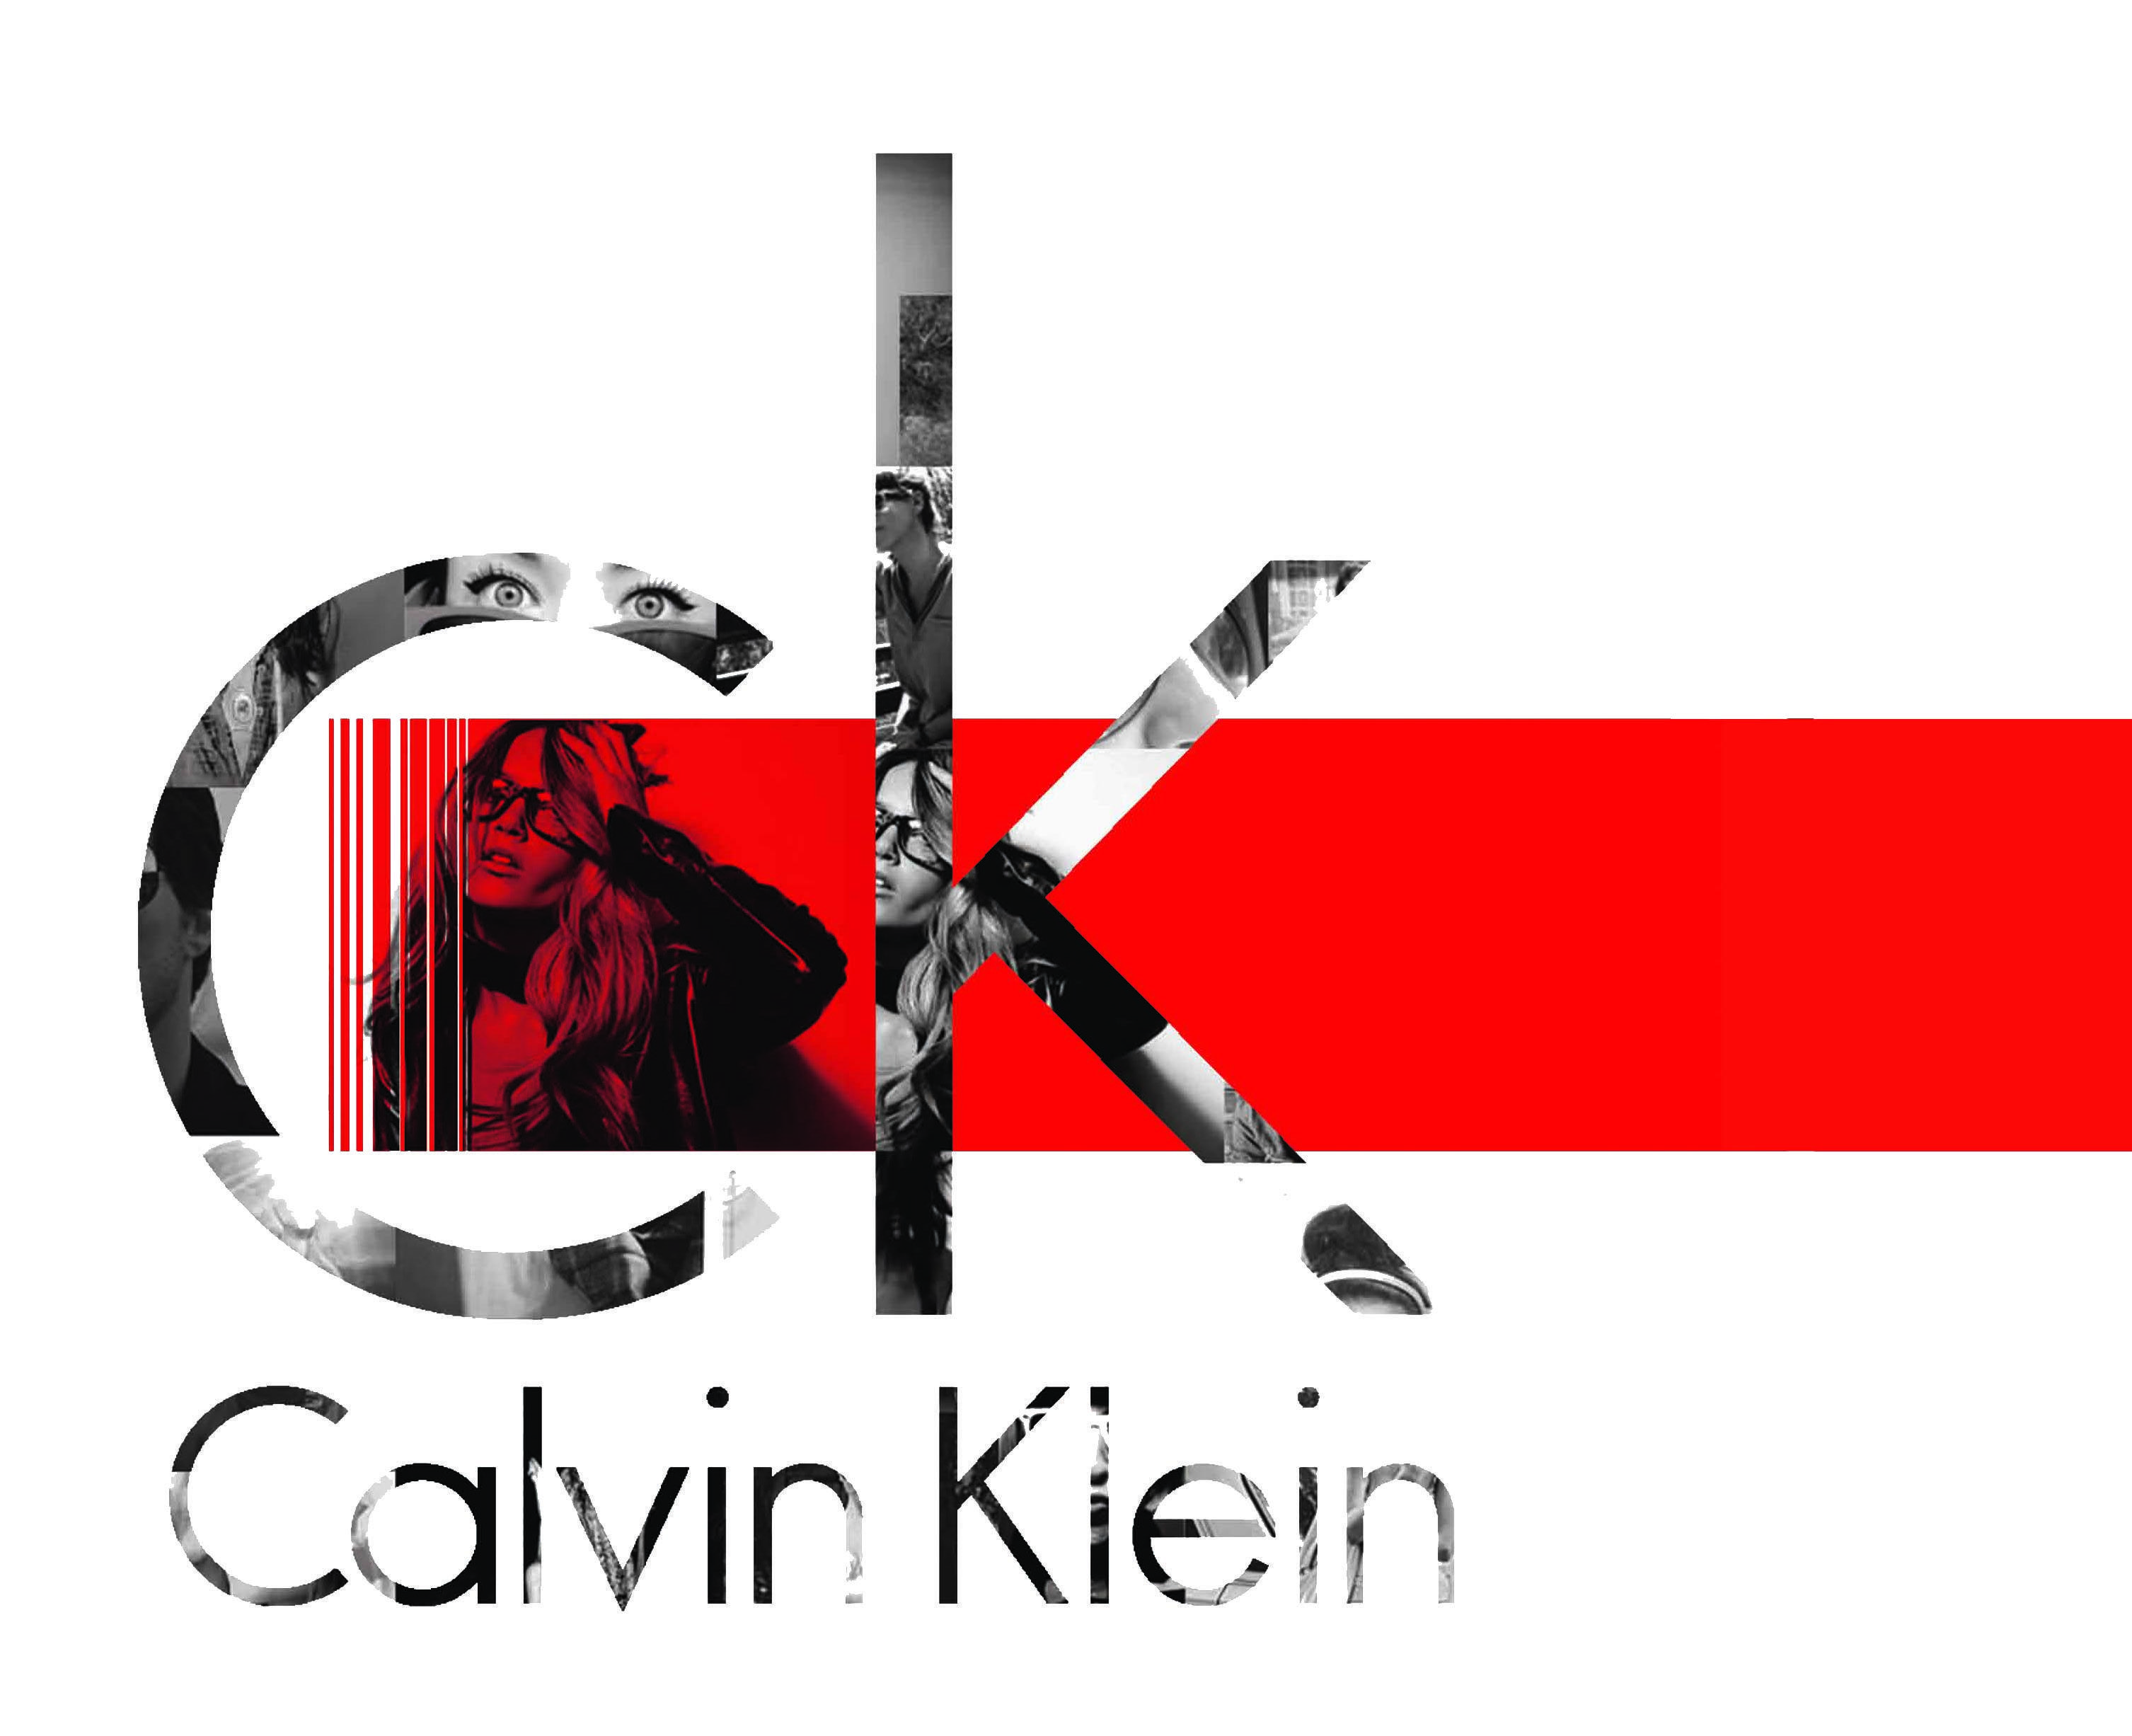 Calvin Klein Wallpaper